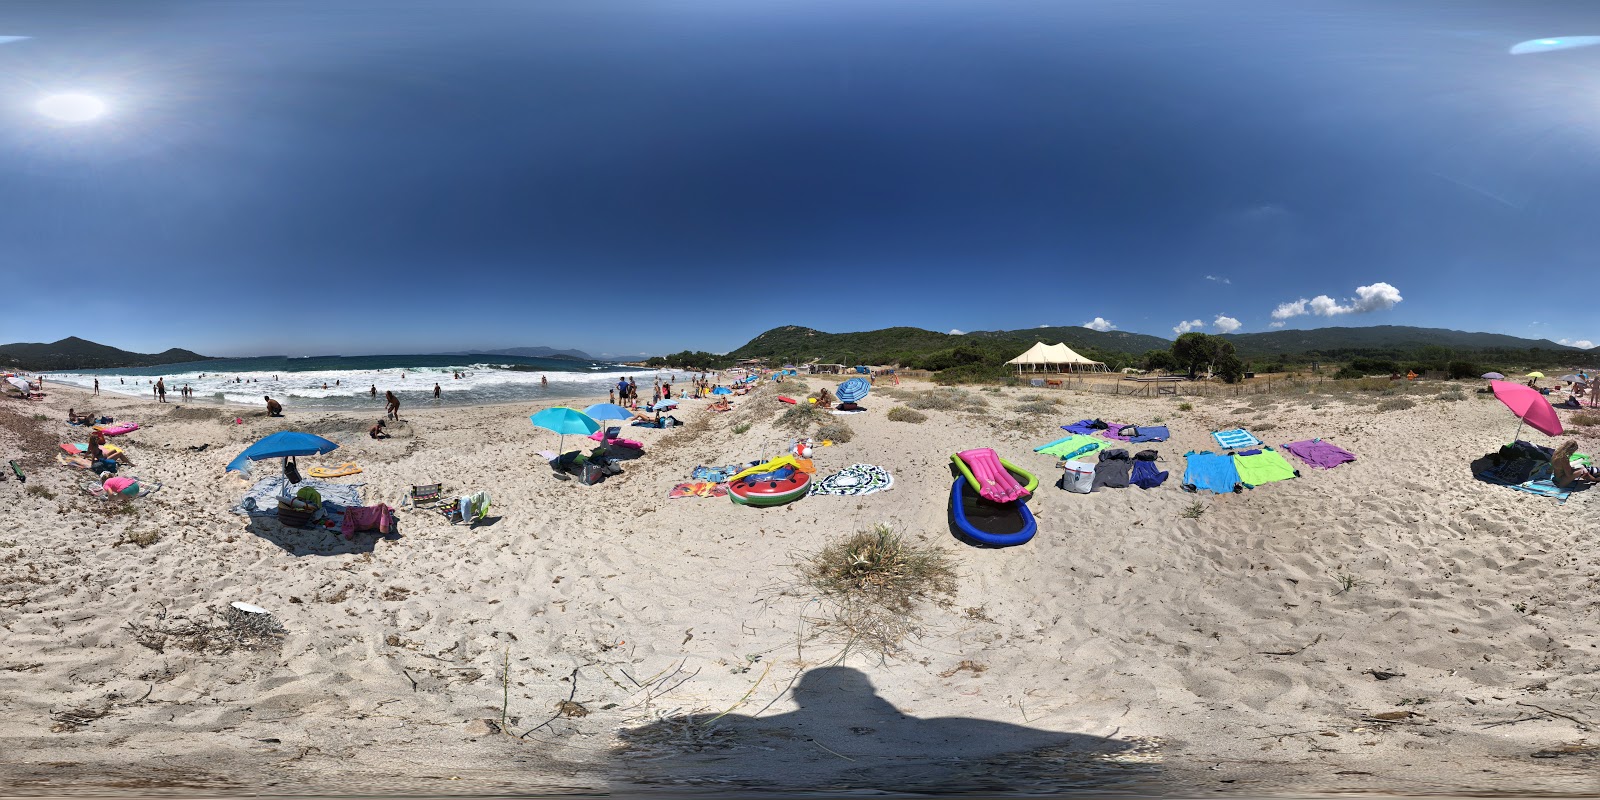 Ruppione beach'in fotoğrafı - rahatlamayı sevenler arasında popüler bir yer